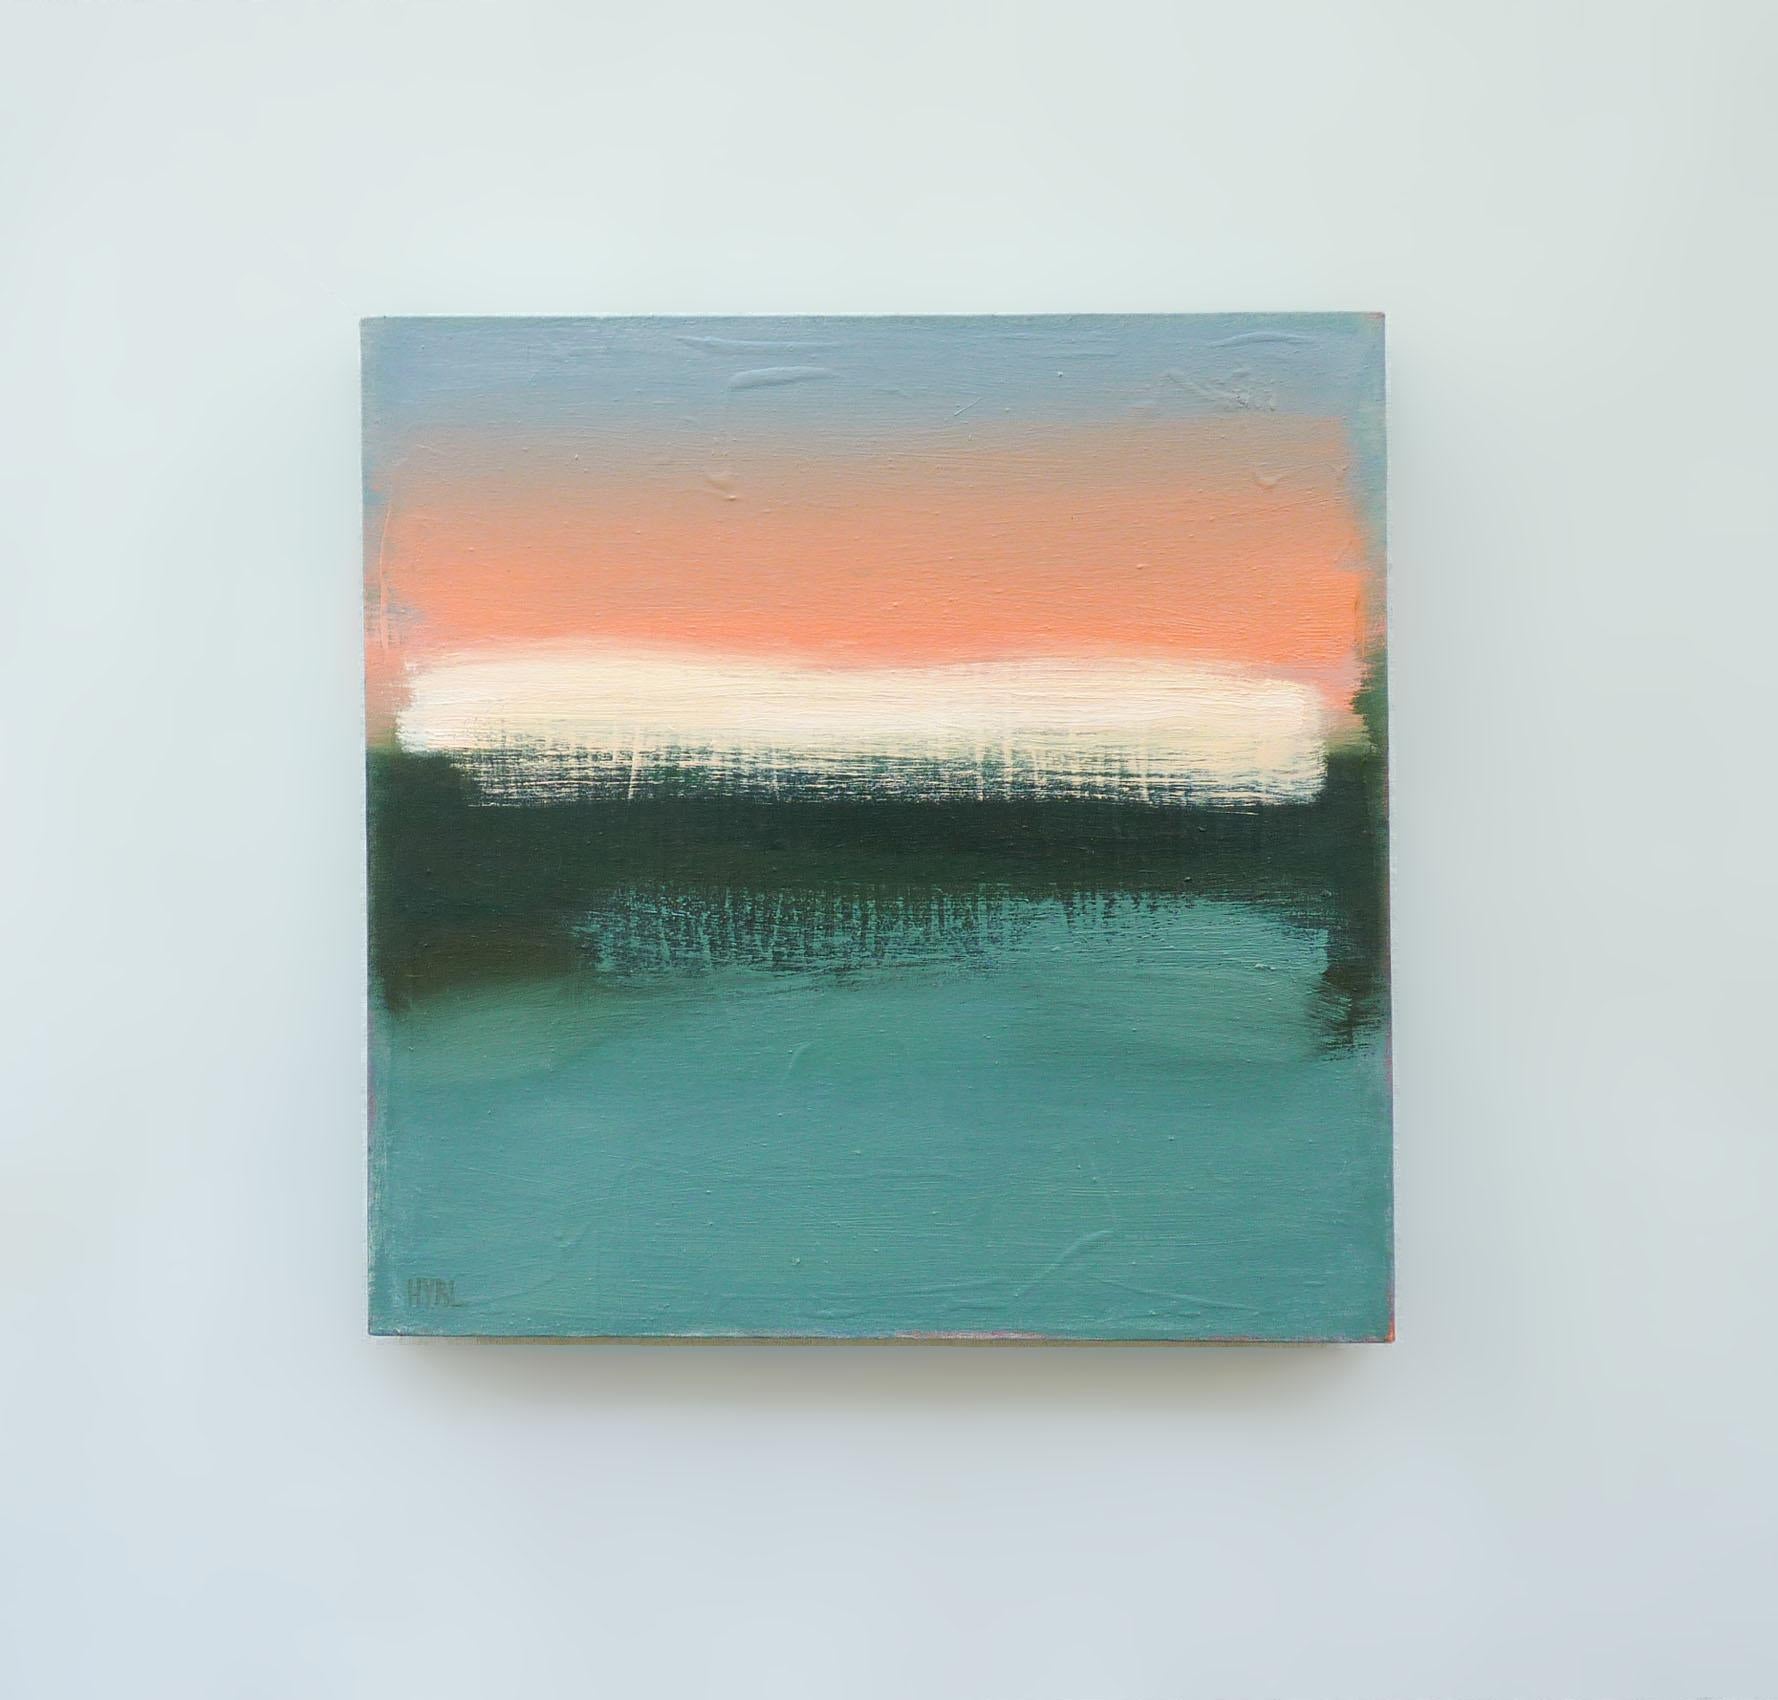 <p>Kommentare des Künstlers<br>Das Gemälde ist von der Big Sur Küste inspiriert und fängt ihre Essenz in einem abstrakten Werk ein, das den Sonnenuntergang durch kühne, gestreifte Muster wiedergibt. Die leuchtenden Orangetöne des Himmels harmonieren